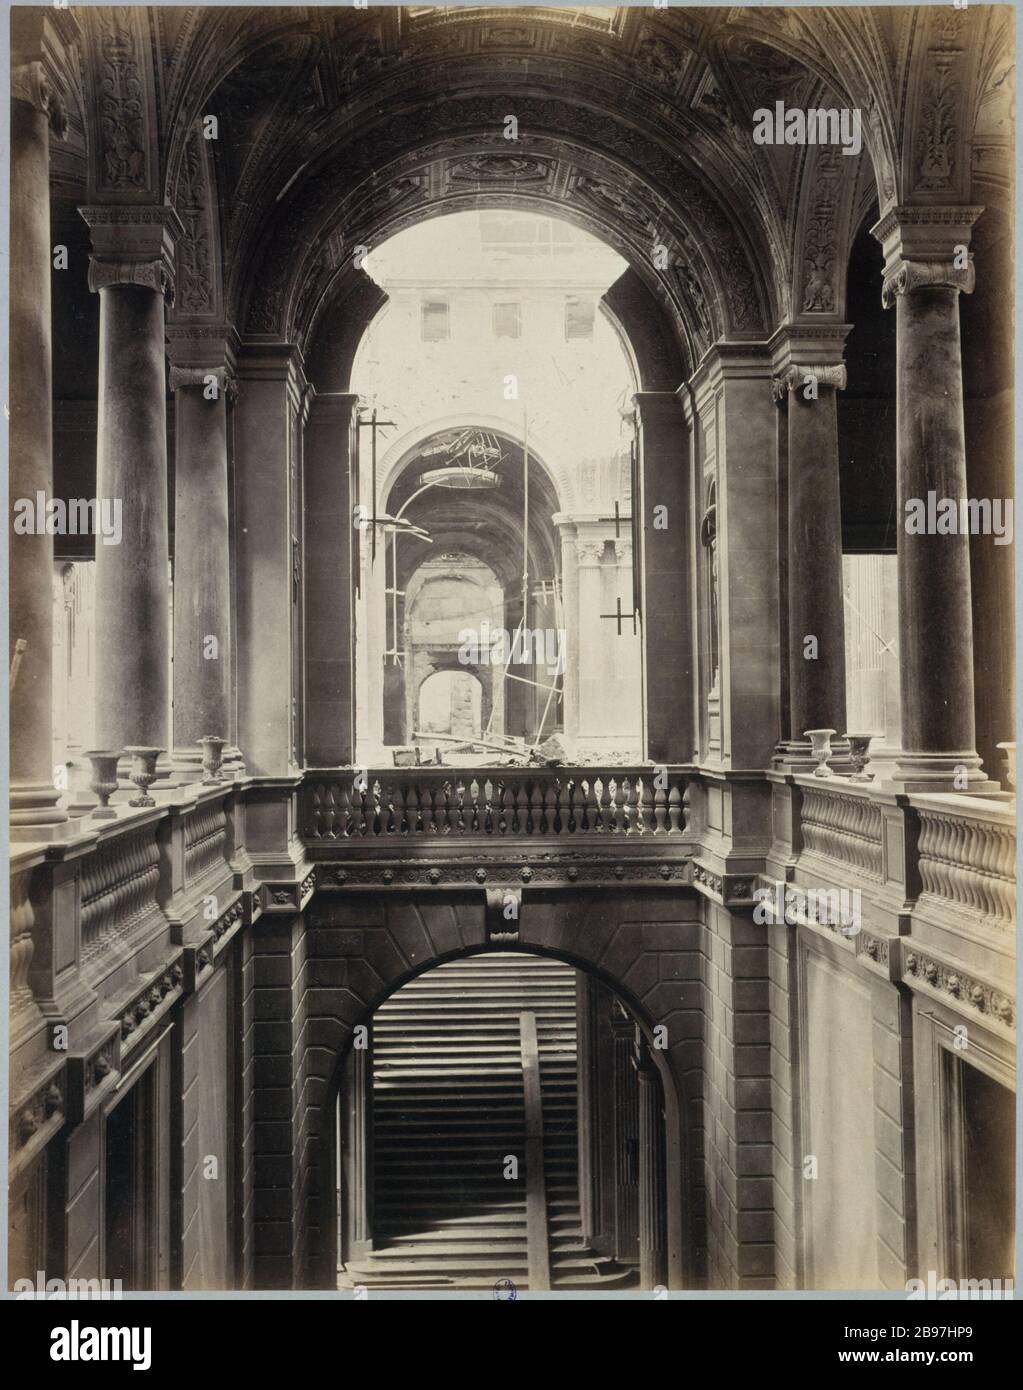 DISASTERS OF WAR: CITY HALL, STAIRS OF HONOR 'Désastres de la Guerre : Hôtel de Ville, escalier d'honneur'. Photographie de J. Andrieu. Paris, musée Carnavalet. Stock Photo